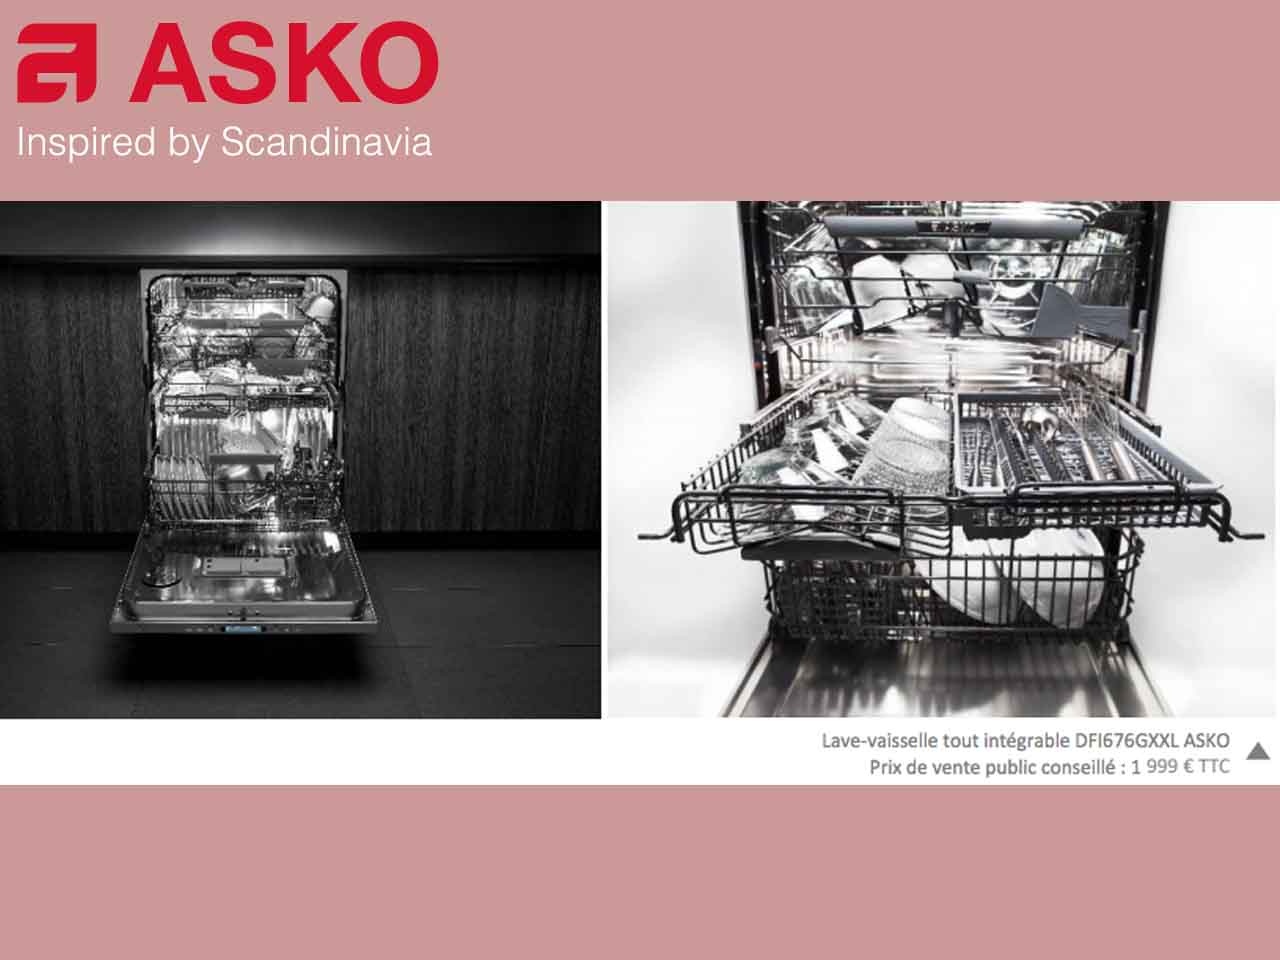 Asko présente son lave-vaisselle tout intégrable